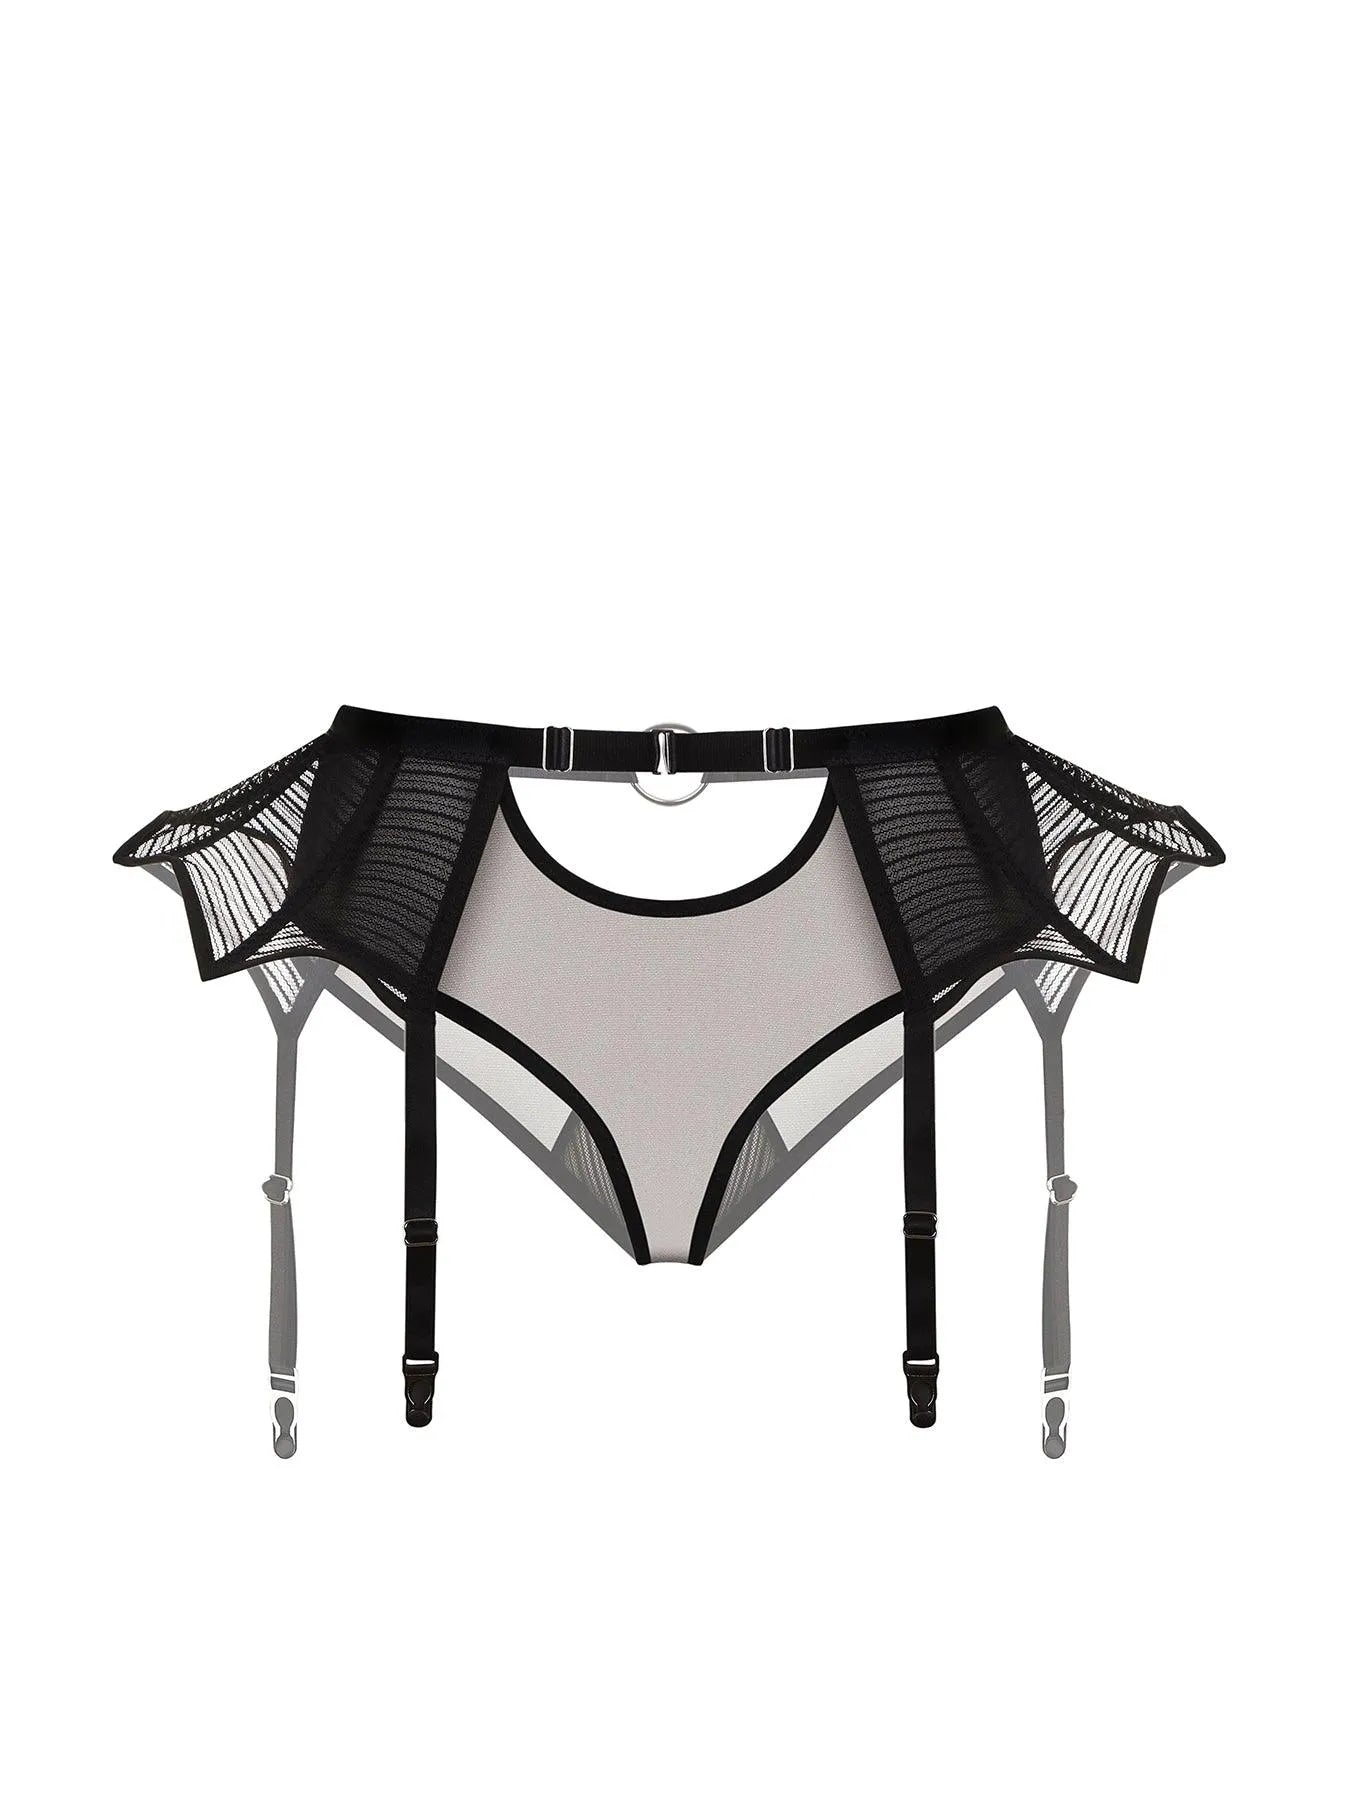 ᐉ SPIDER LADY PANTIES — Buy SPIDER LADY PANTIES online by price $68.00 ...